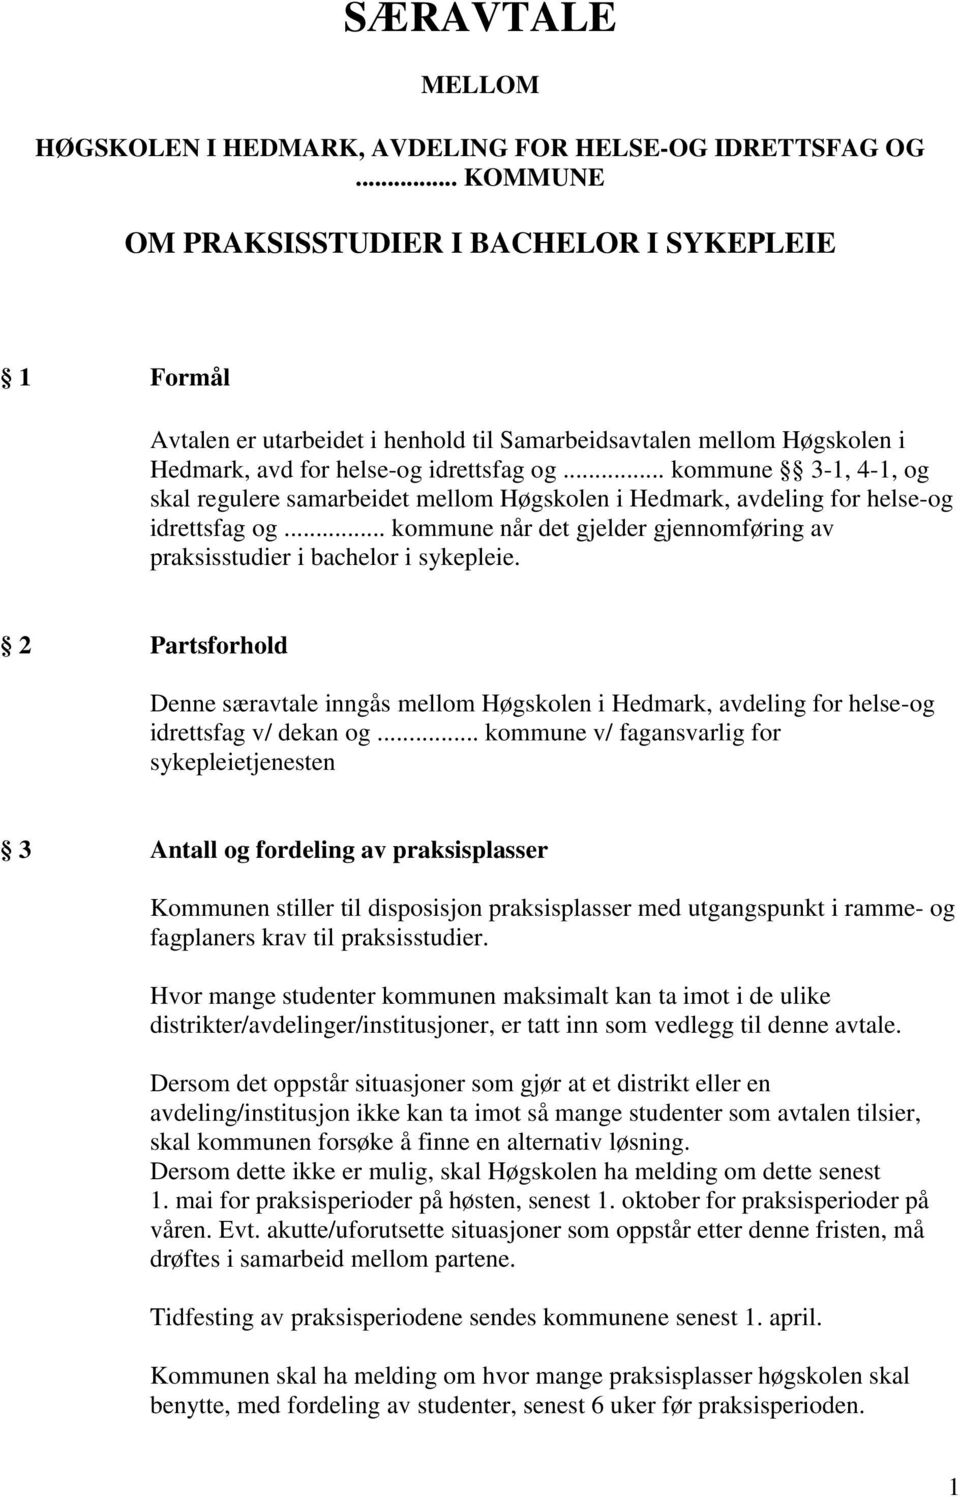 .. kommune 3-1, 4-1, og skal regulere samarbeidet mellom Høgskolen i Hedmark, avdeling for helse-og idrettsfag og... kommune når det gjelder gjennomføring av praksisstudier i bachelor i sykepleie.